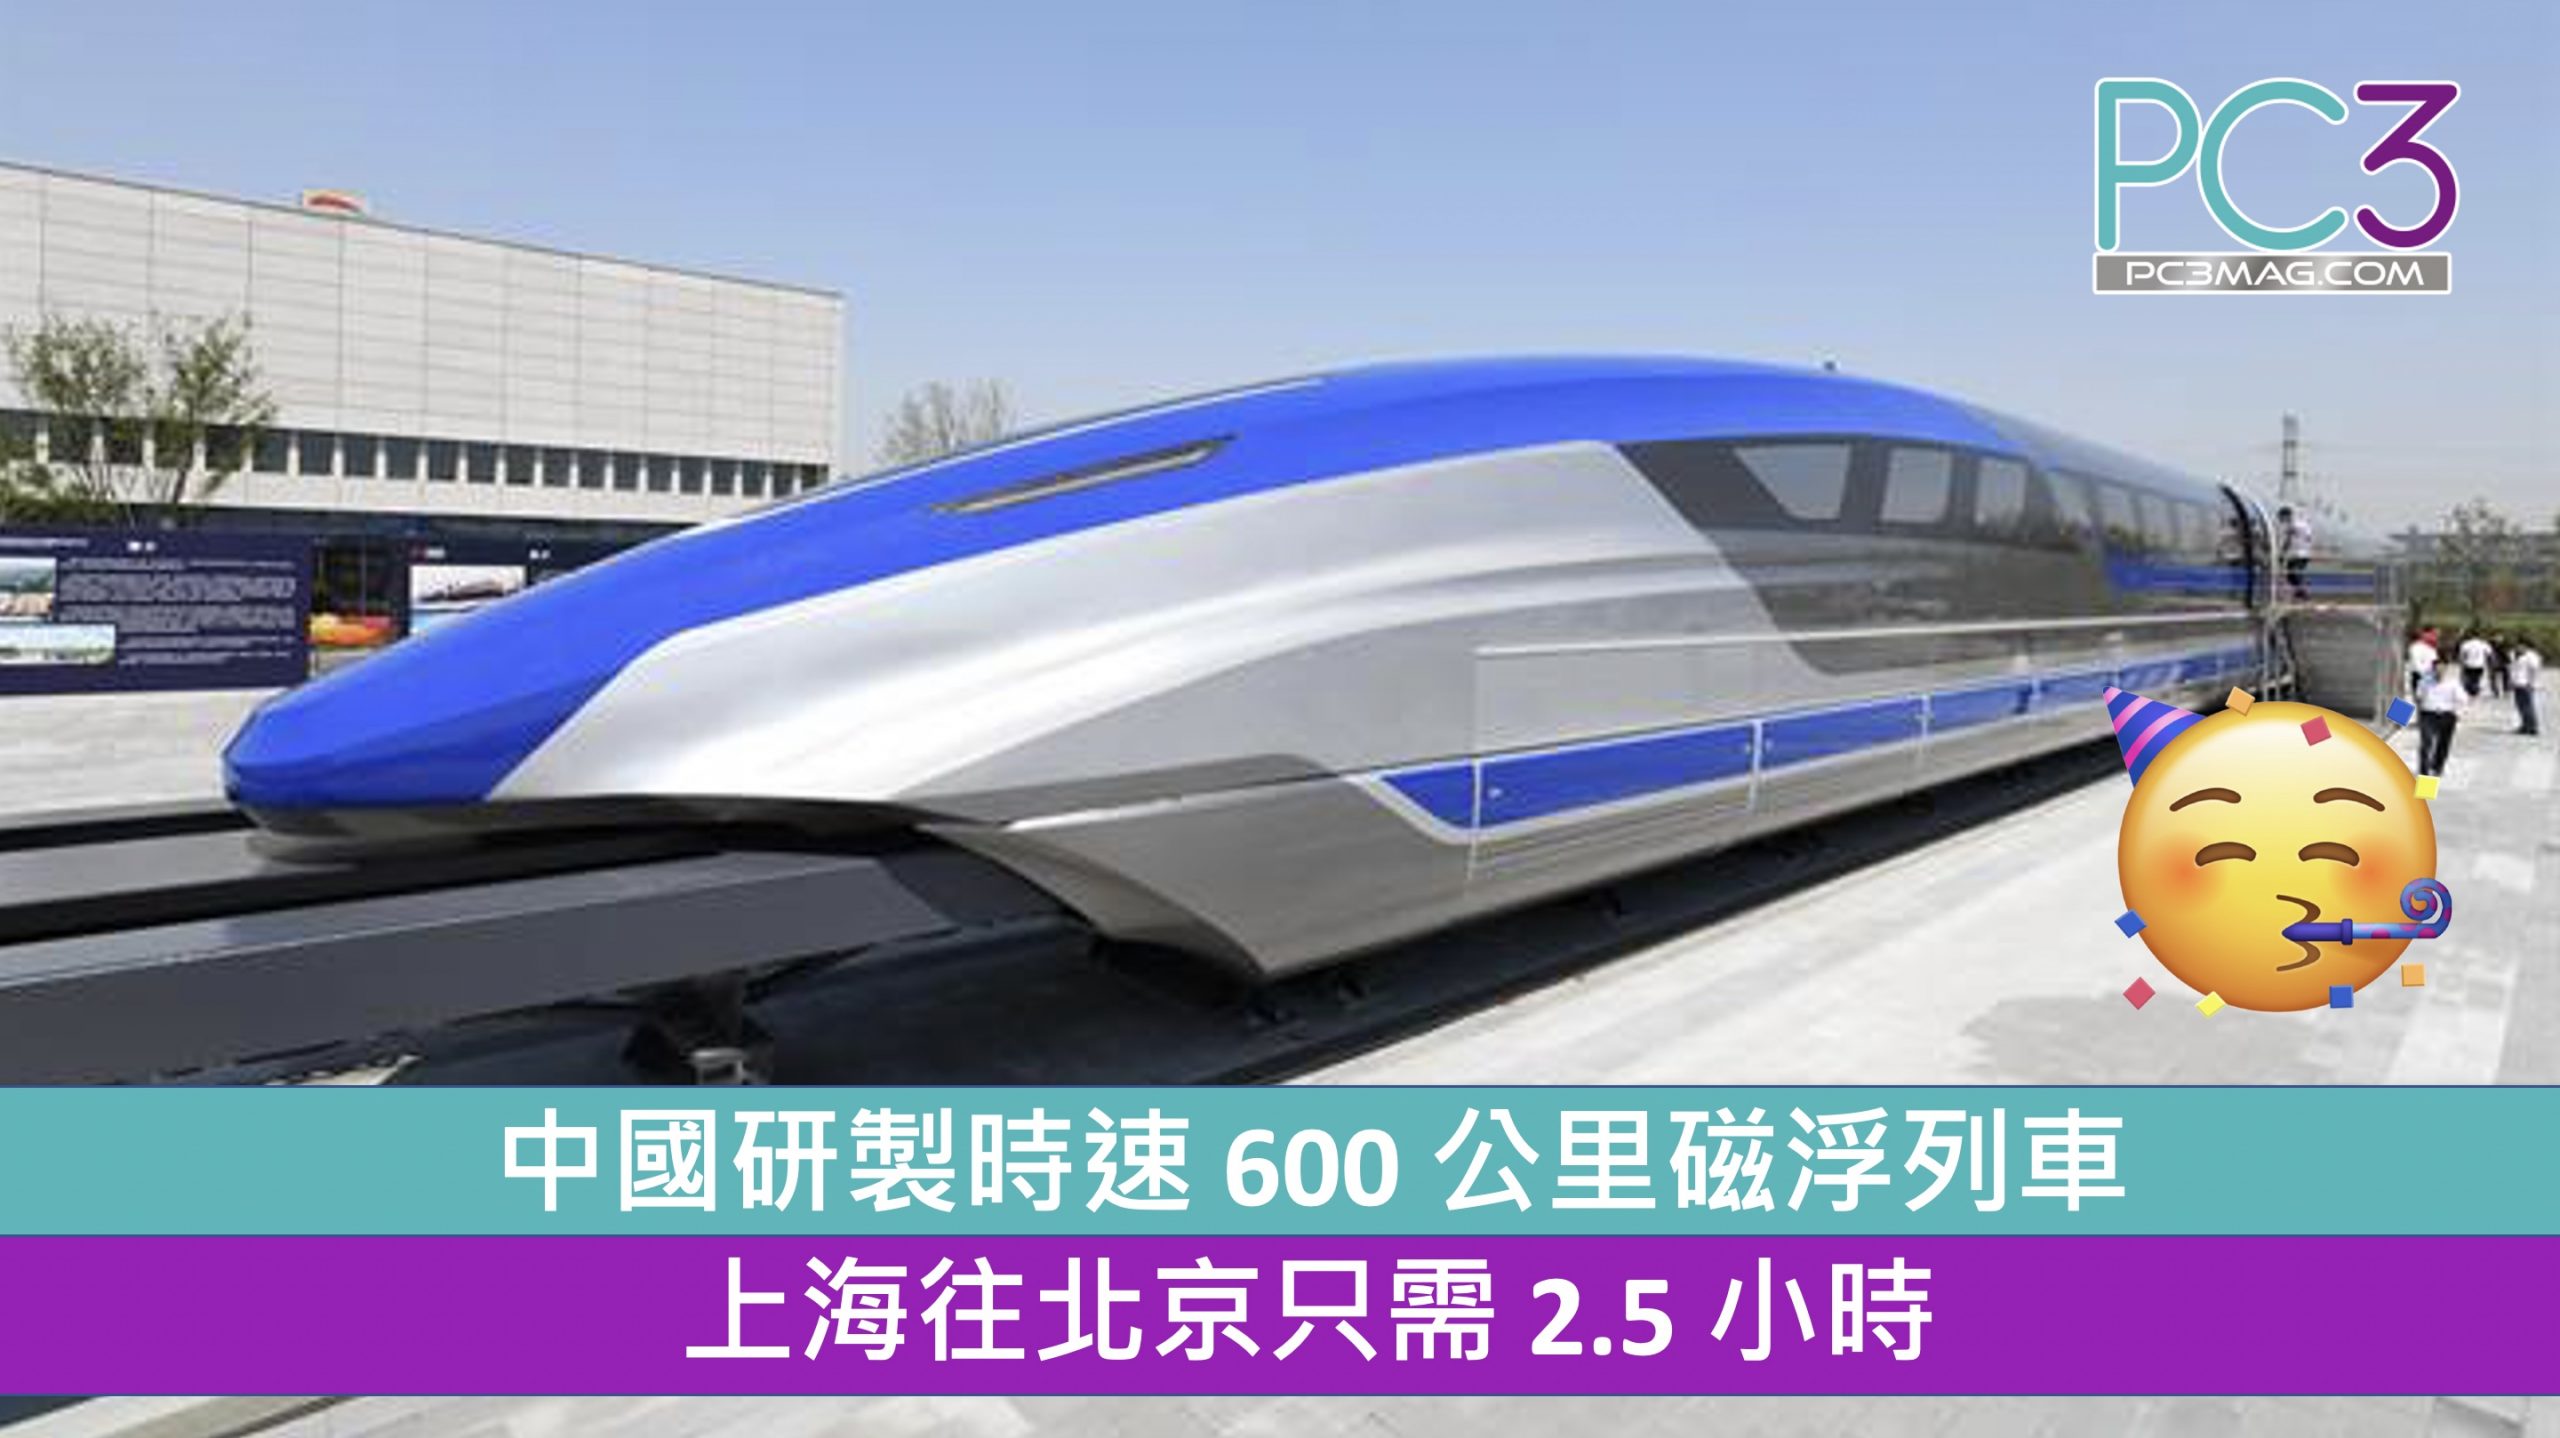 中國研製時速600 公里磁浮列車上海往北京只需2 5 小時 Pc3 Magazine